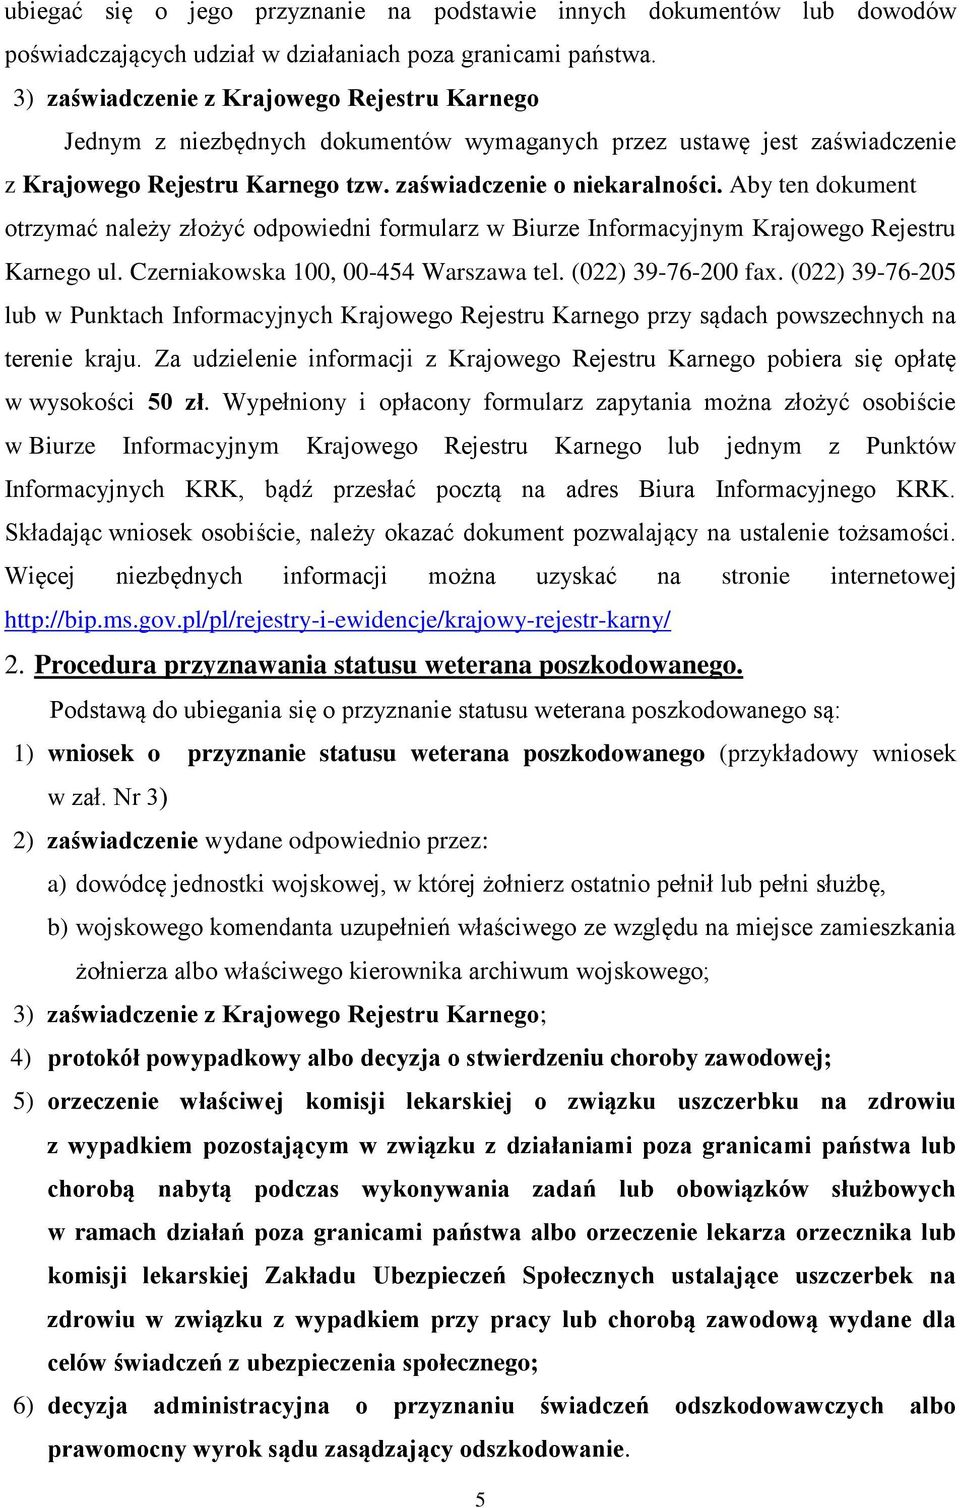 Aby ten dokument otrzymać należy złożyć odpowiedni formularz w Biurze Informacyjnym Krajowego Rejestru Karnego ul. Czerniakowska 100, 00-454 Warszawa tel. (022) 39-76-200 fax.